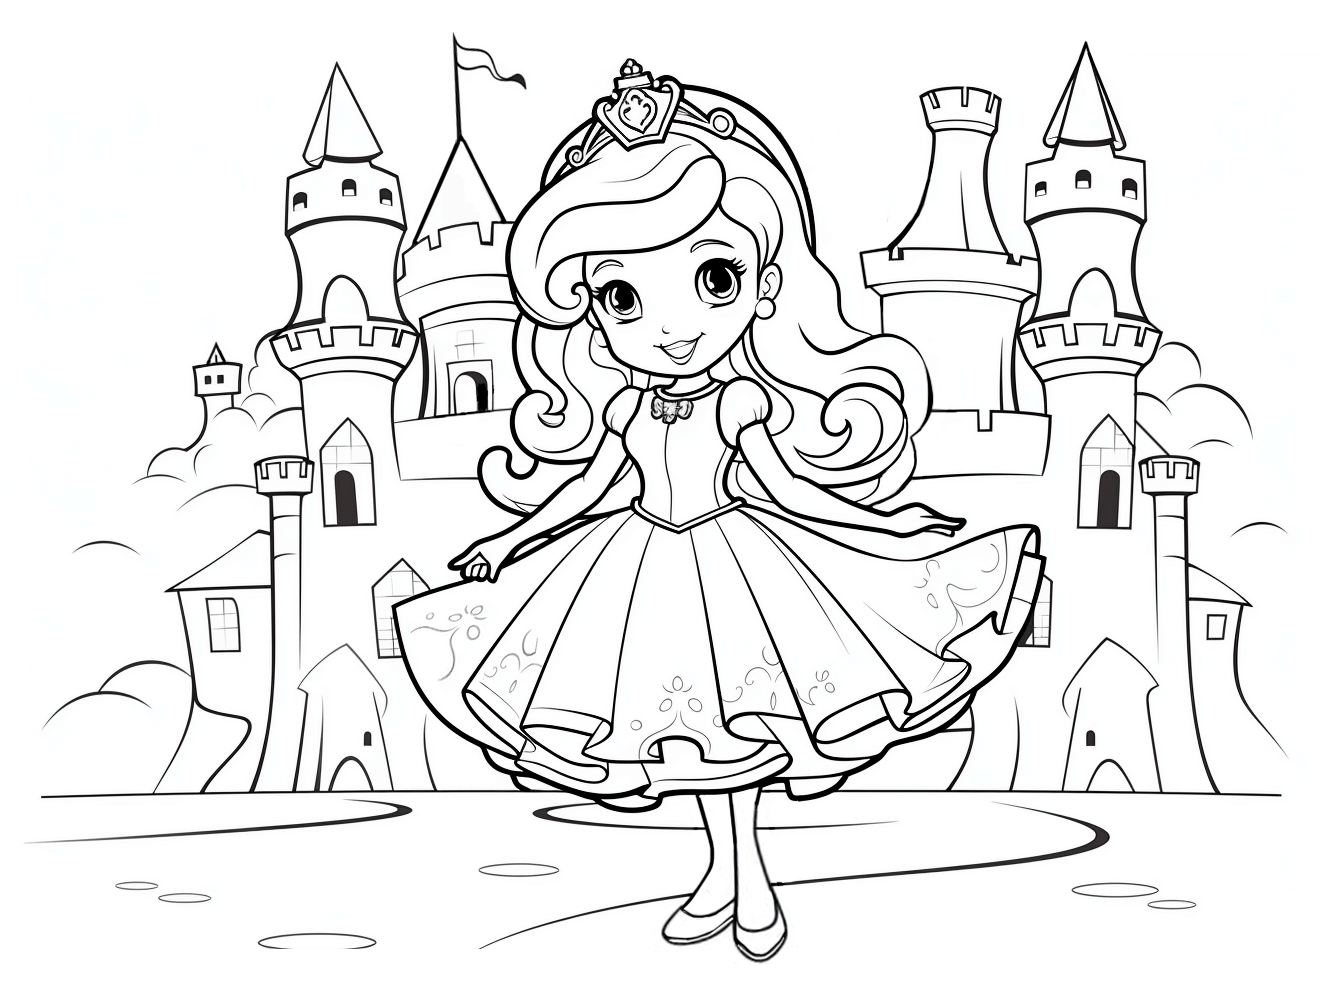 Dibujo de una princesa para colorear con vestido corto